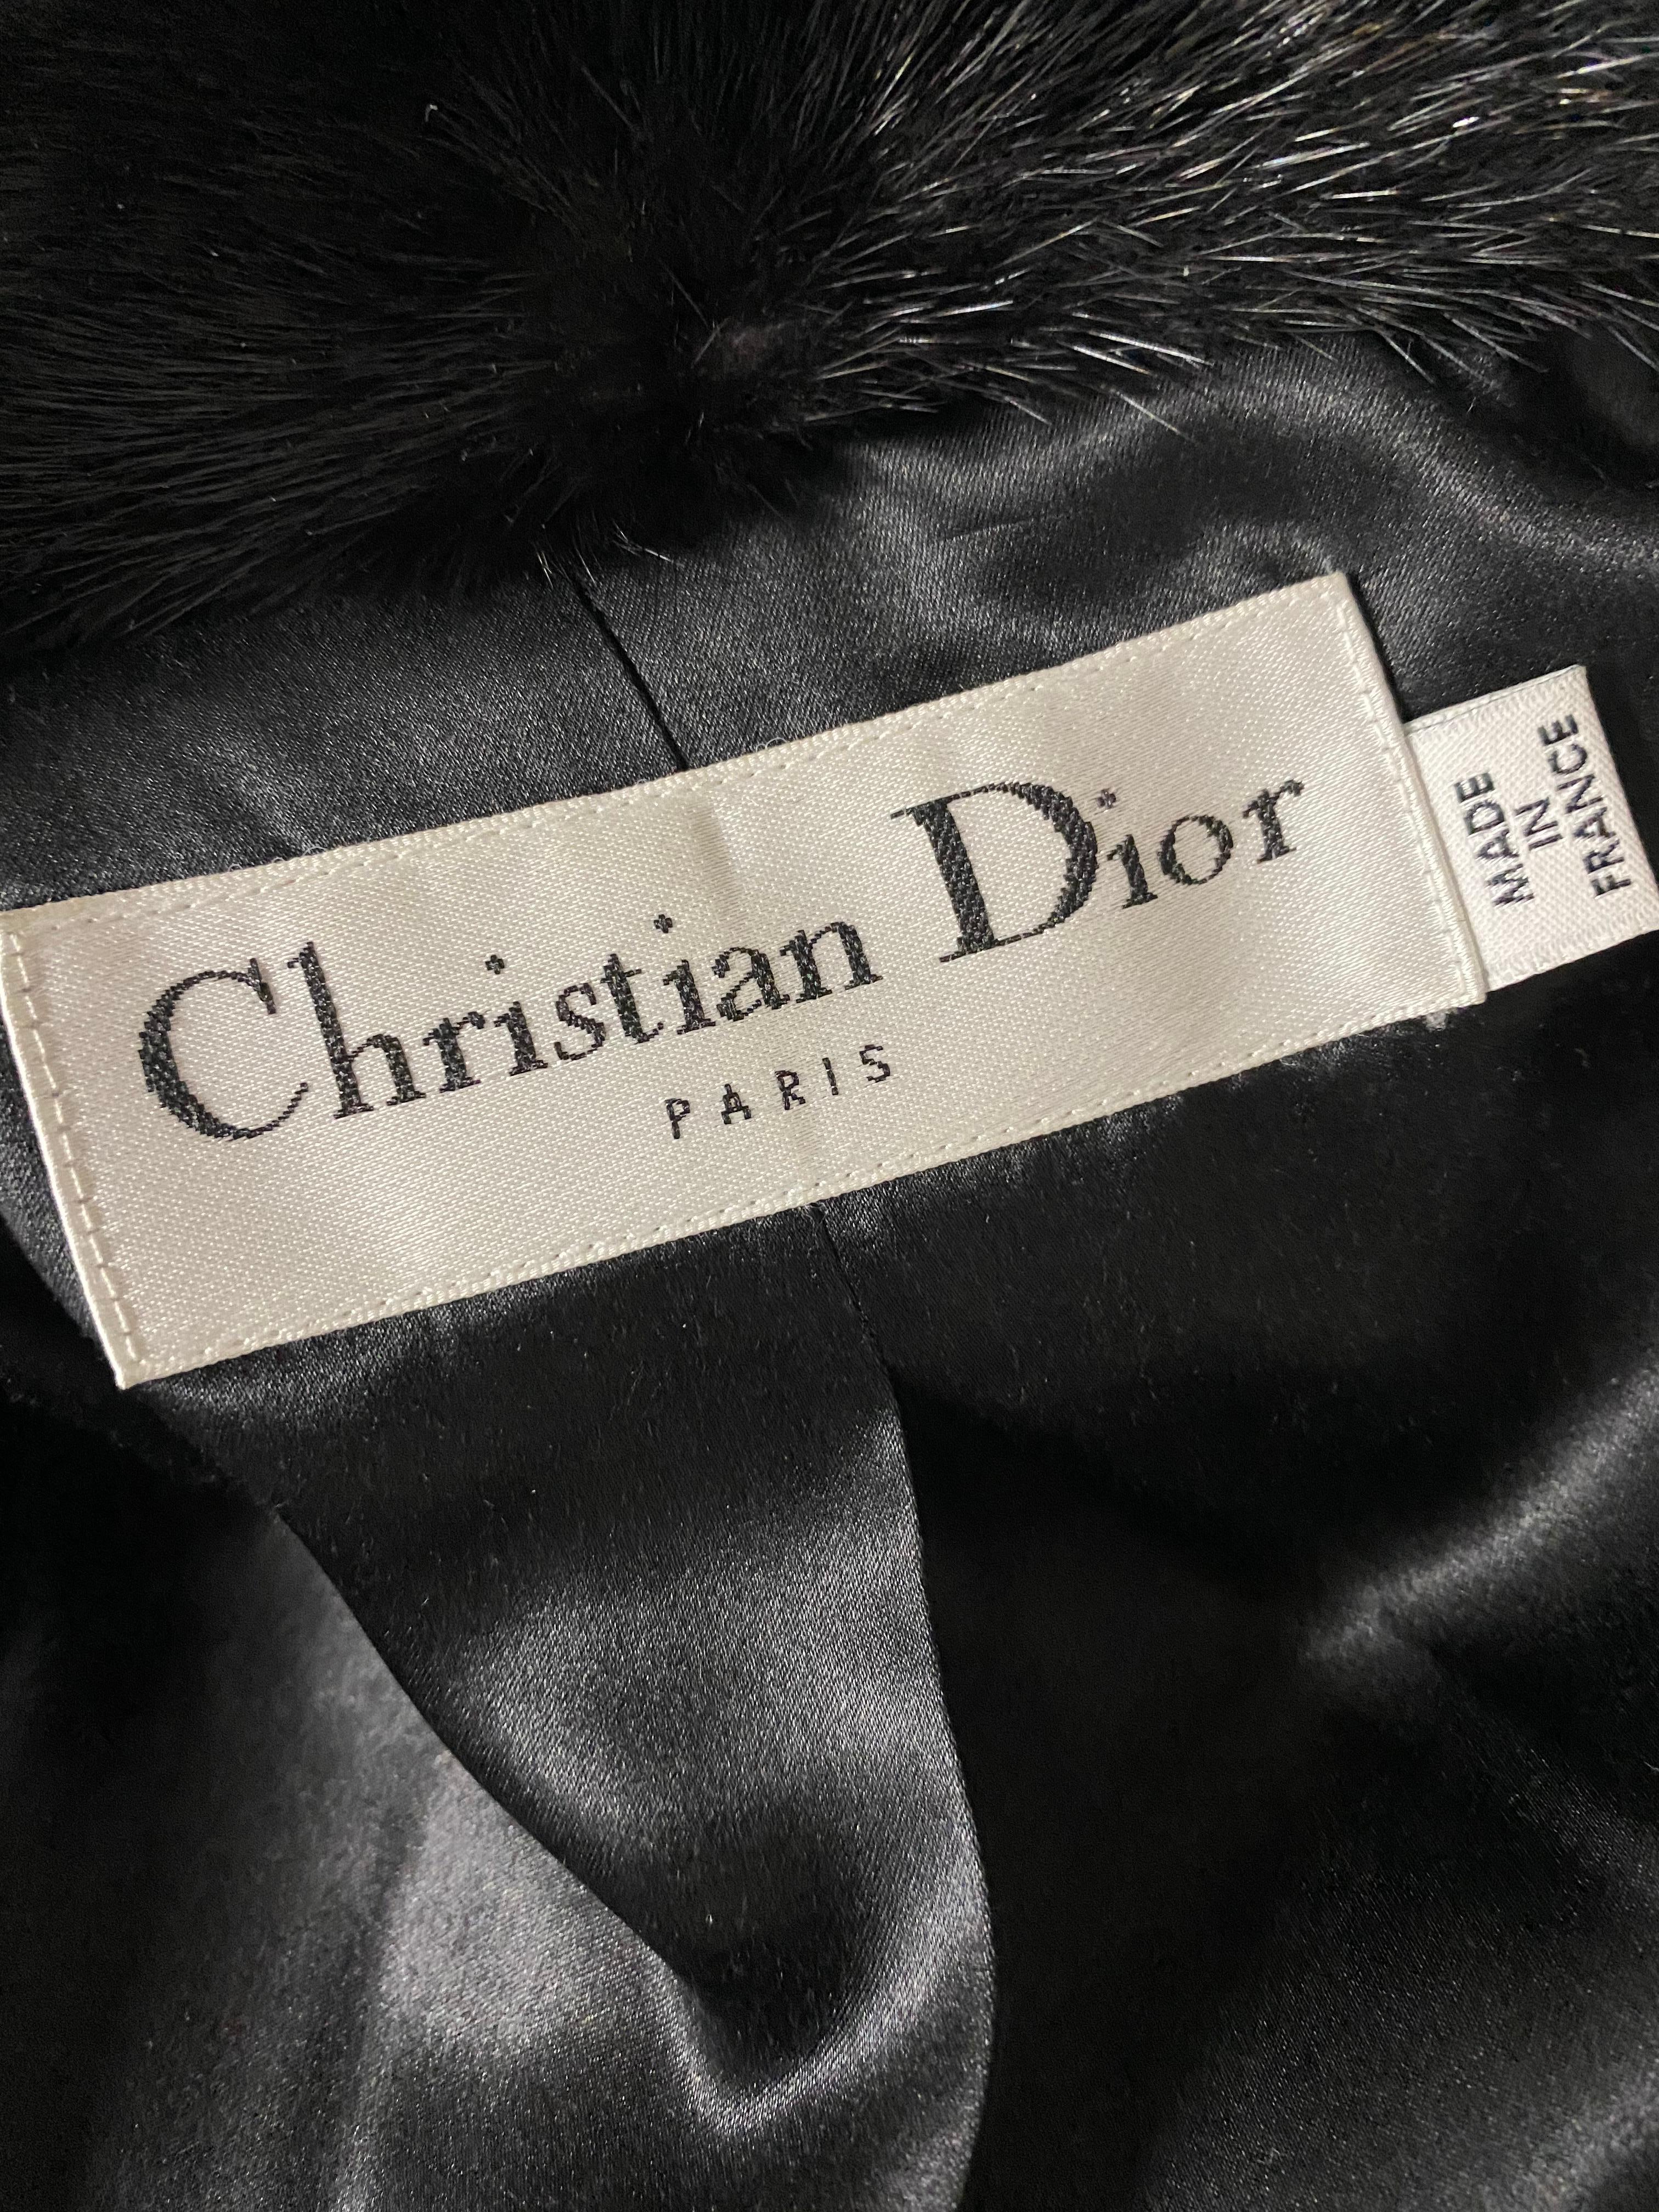 Christian Dior - Veste manteau en tweed de laine noir et fourrure, taille 40 7